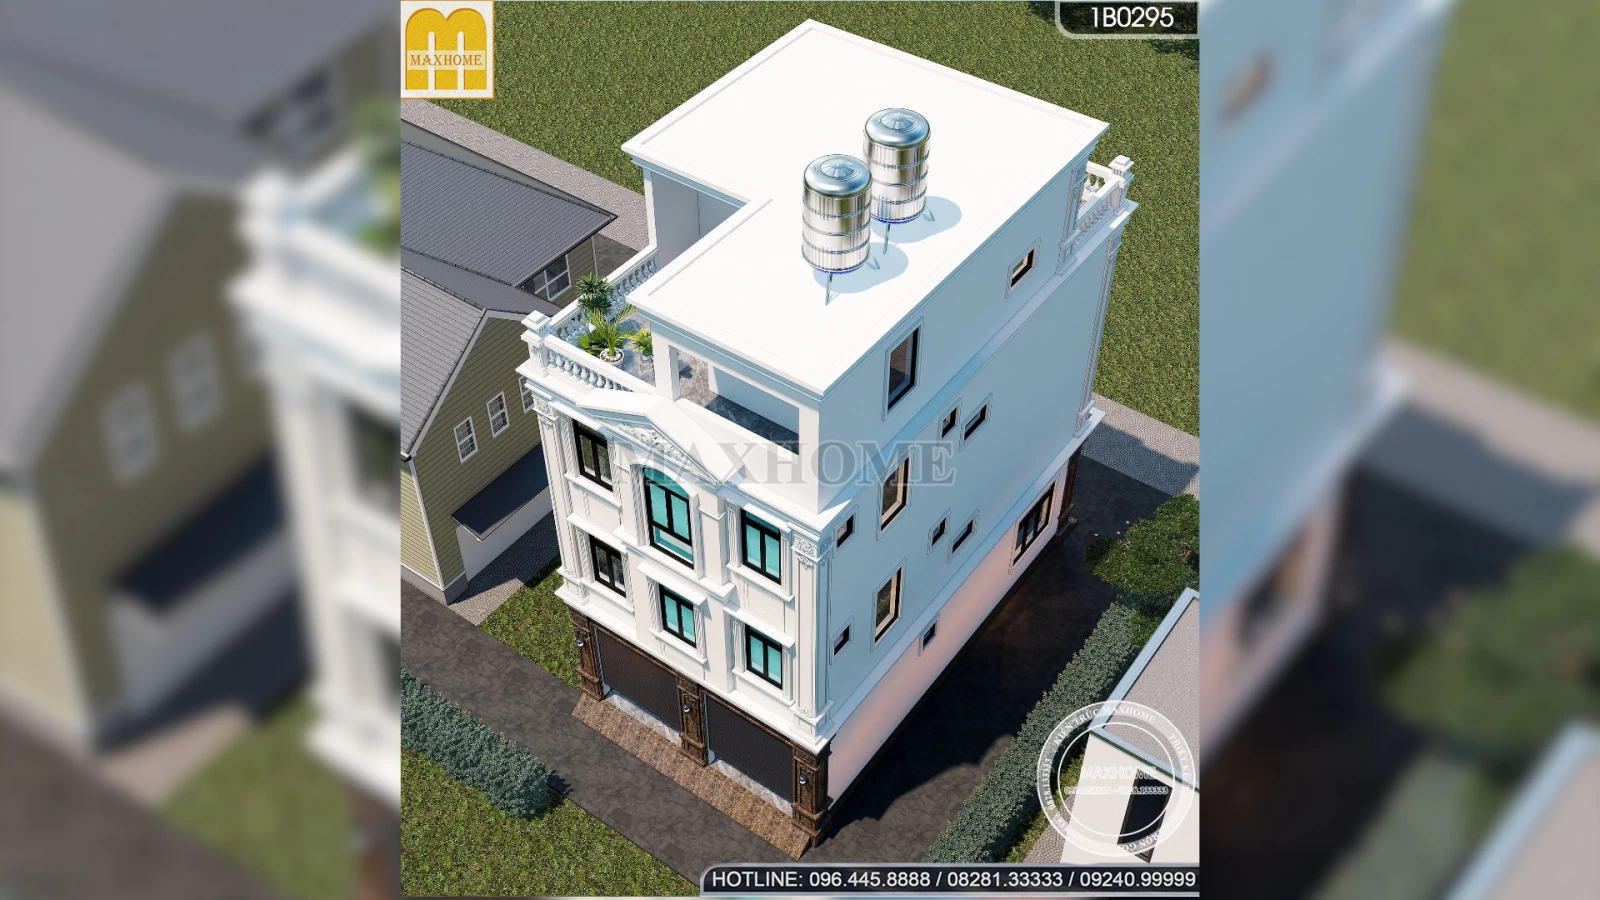 Biệt thự phố 4 tầng tân cổ điển 9 phòng ngủ SIÊU HOÀNH TRÁNG tại Hà Nội | MH03219